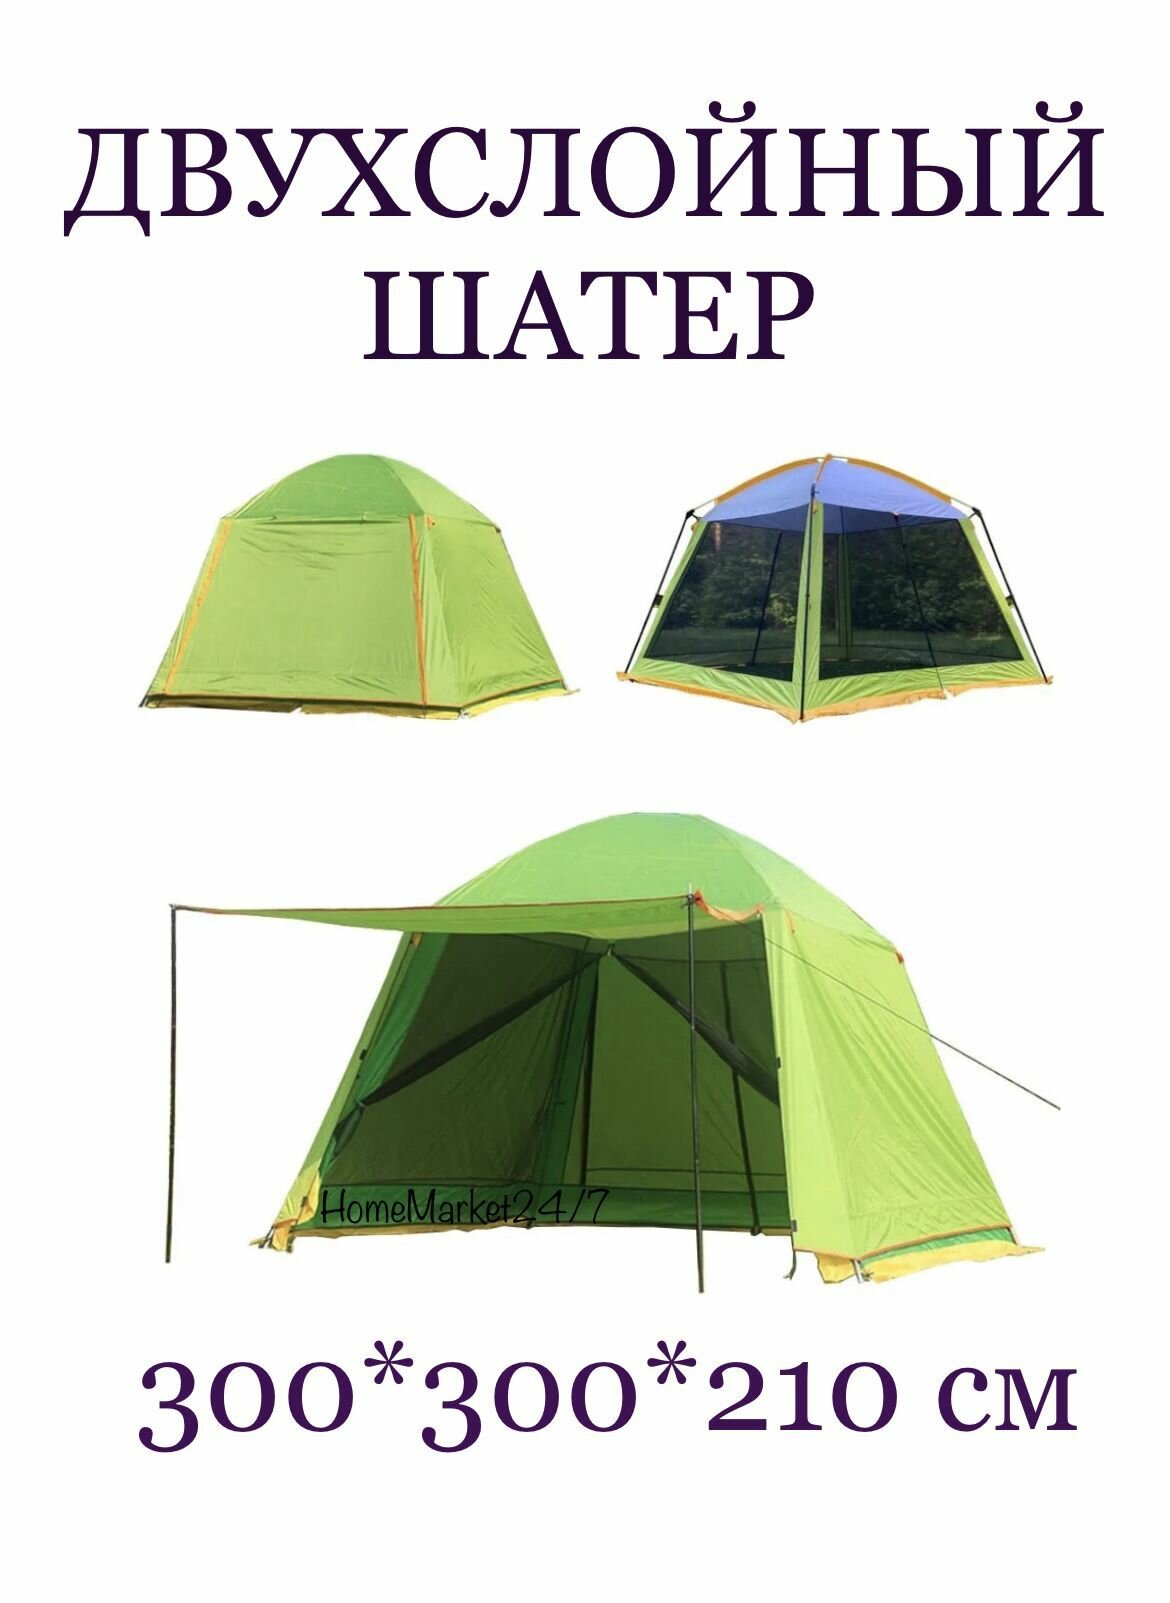 Двухслойный Шатер CoolWalk 1626/Тент кемпинговый, туристический двухслойный шатер беседка для дачи, природы, пикника